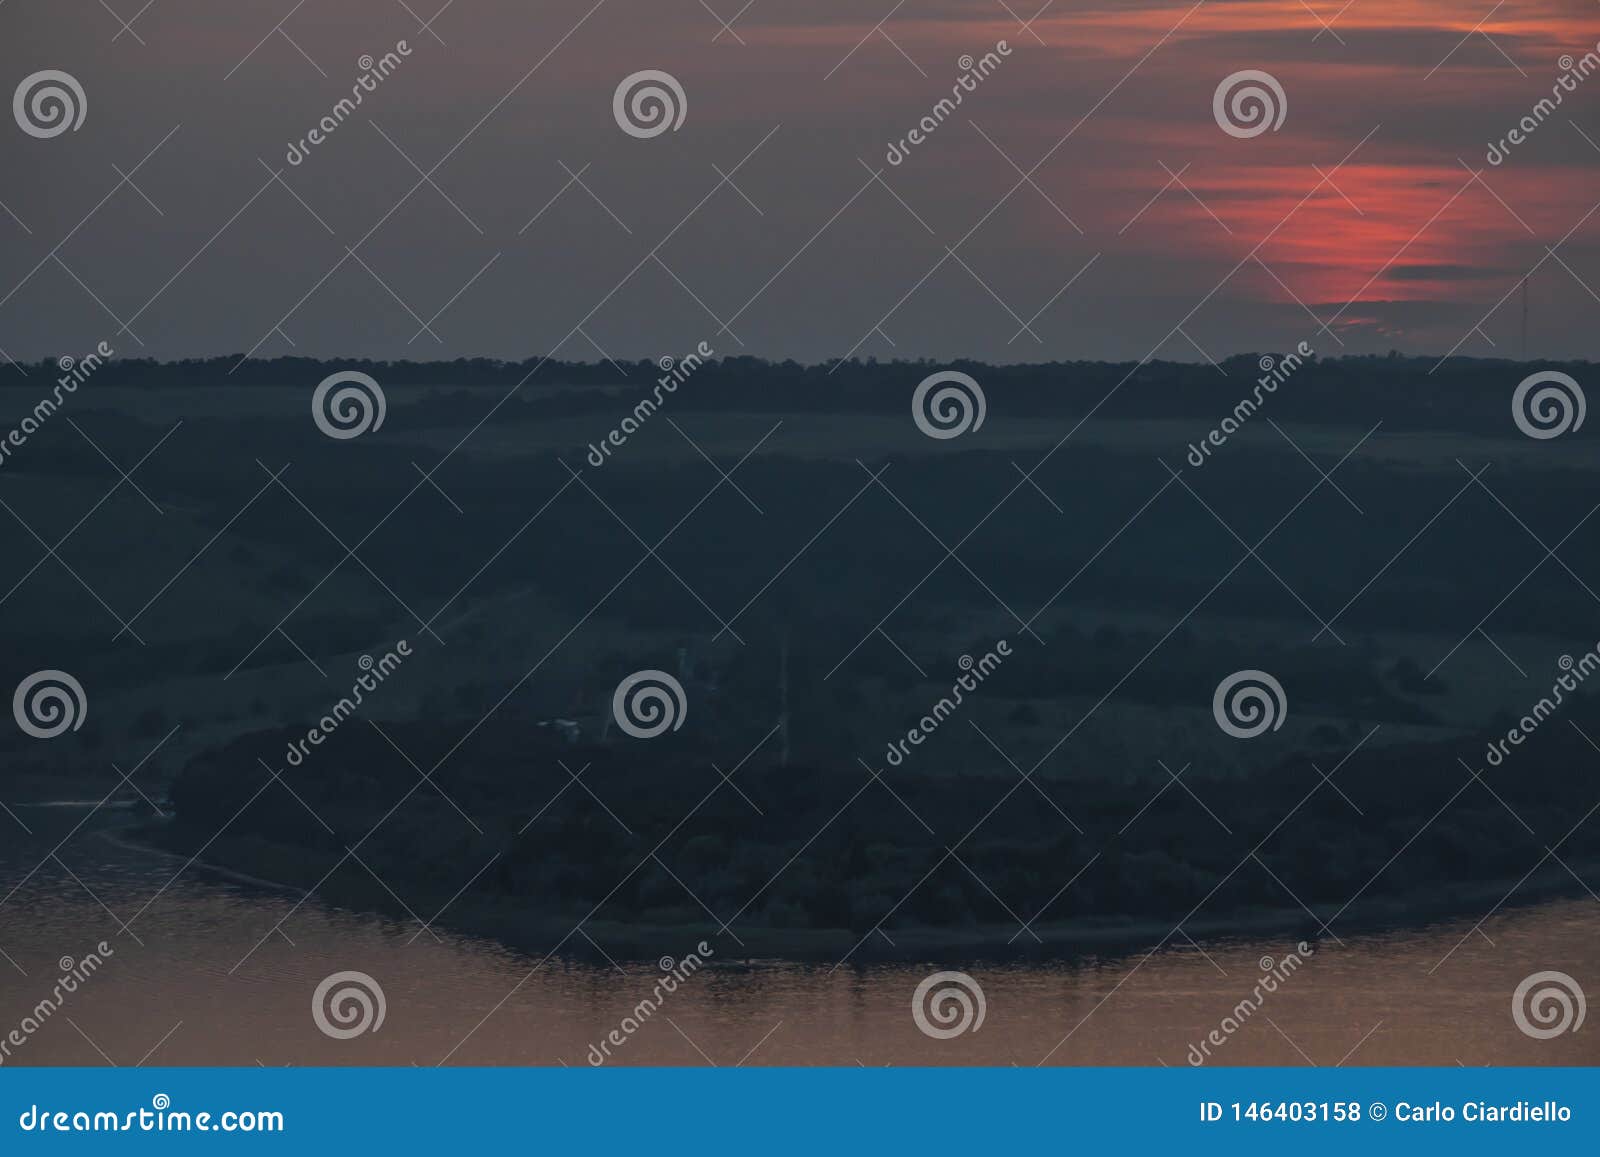 sunset in bogotÃÂ  carpati ukraine